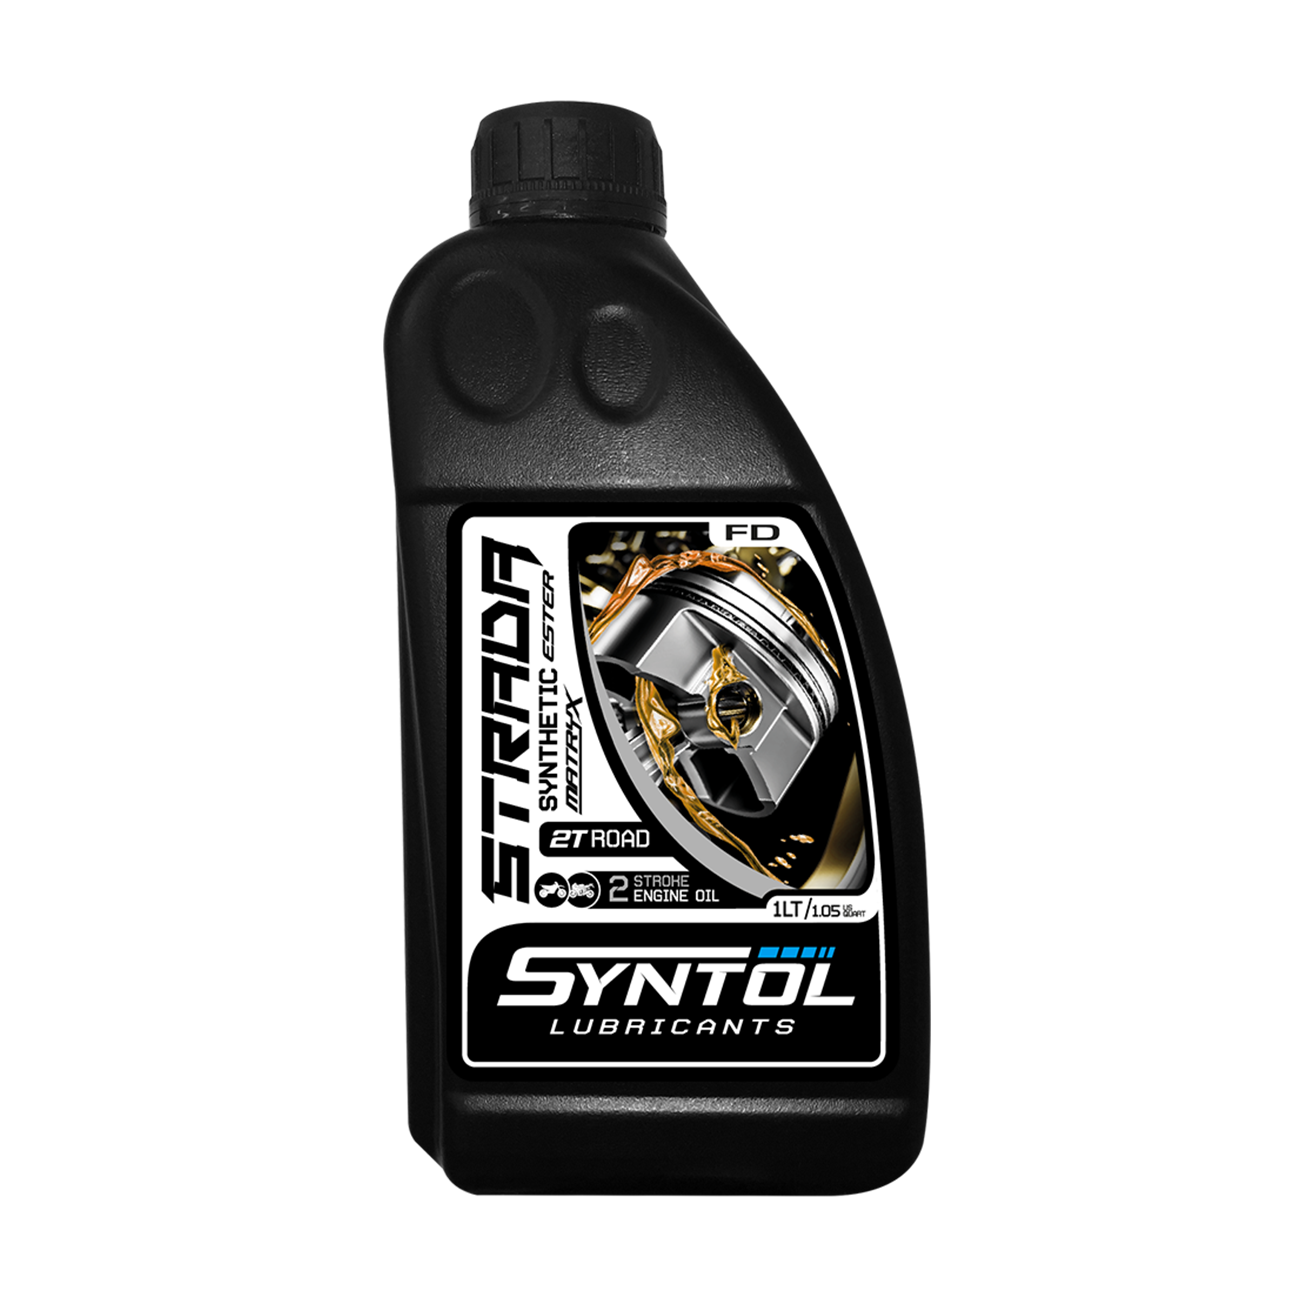 Semi-Synthetic 2 Stroke Oil